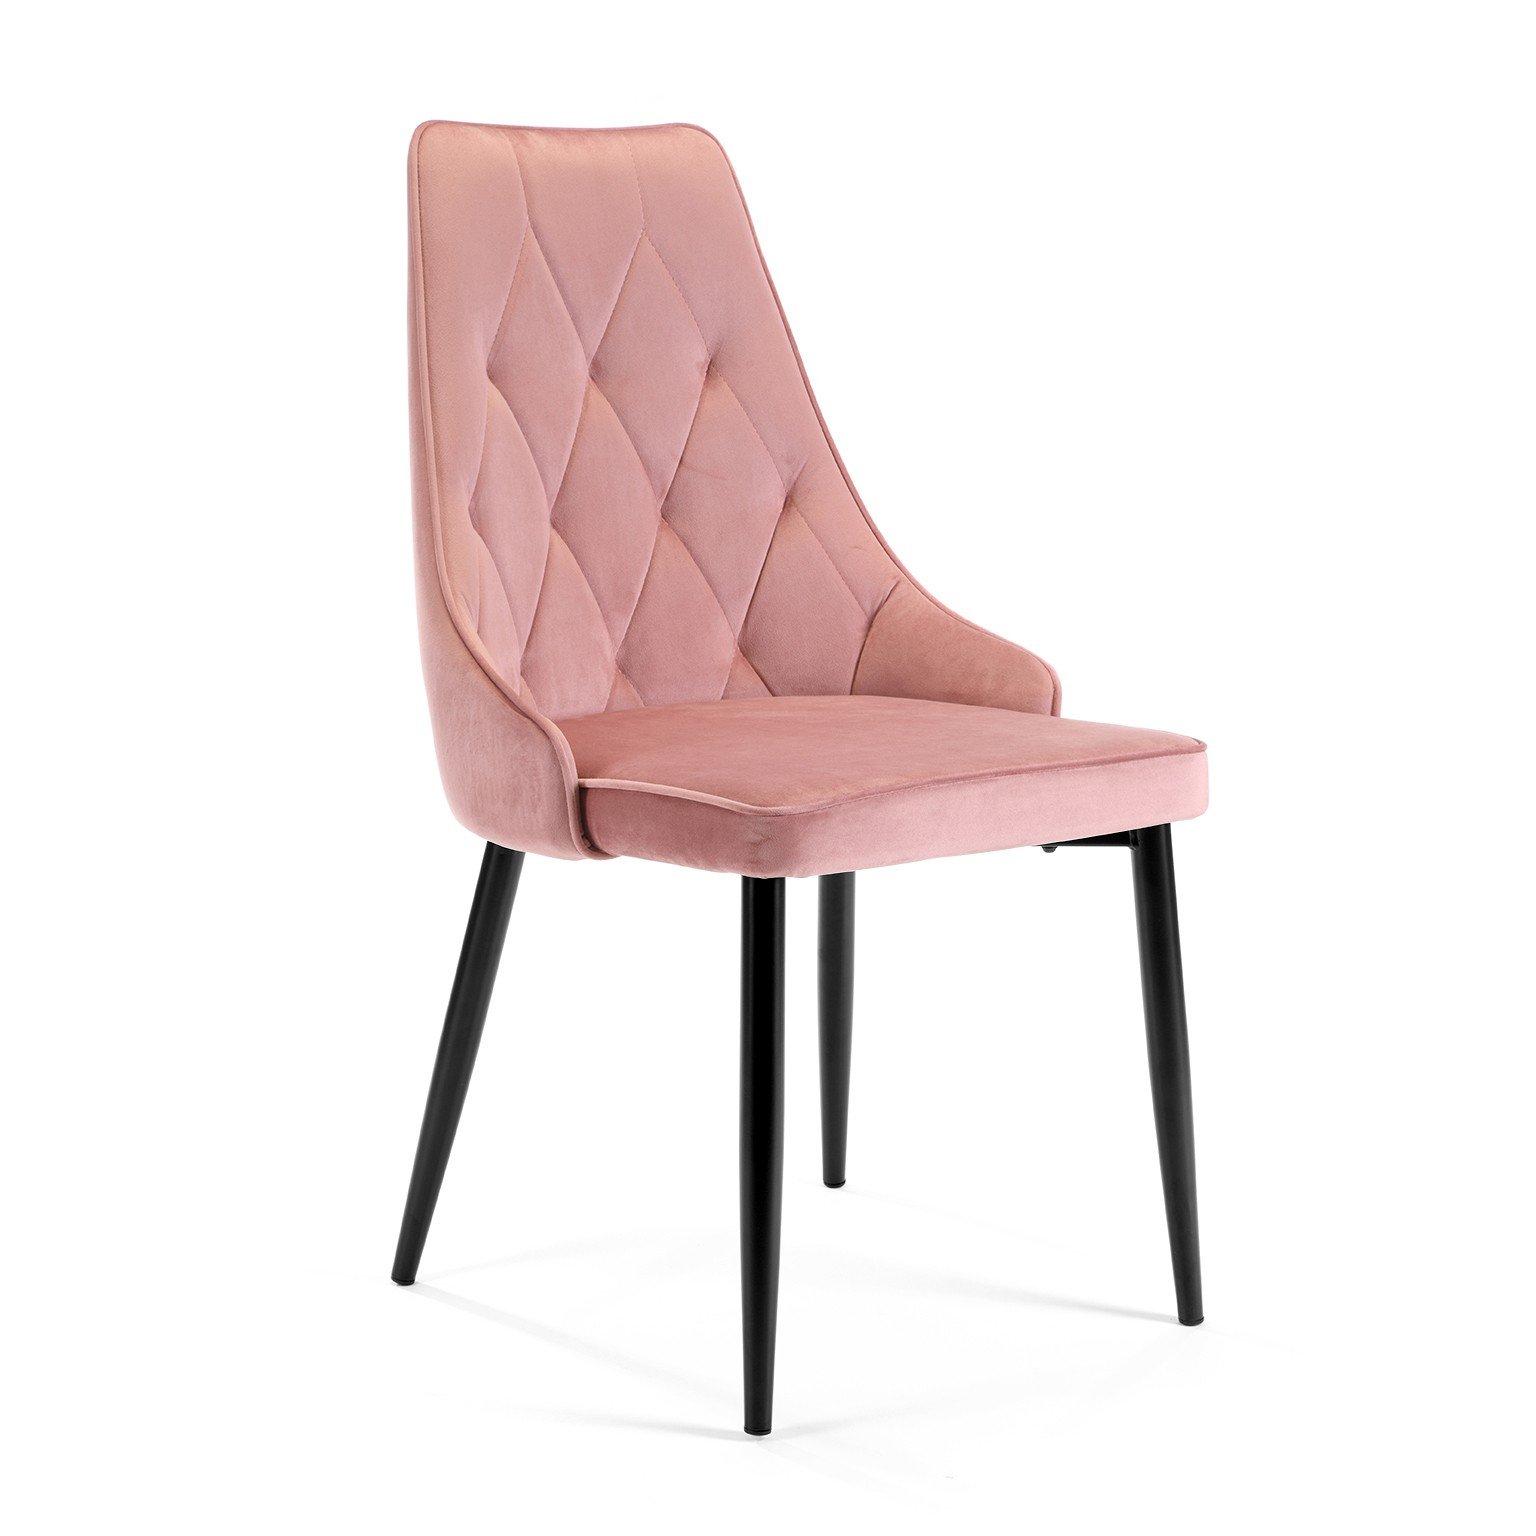 4-ių kėdžių komplektas SJ.054, rožinė - 2